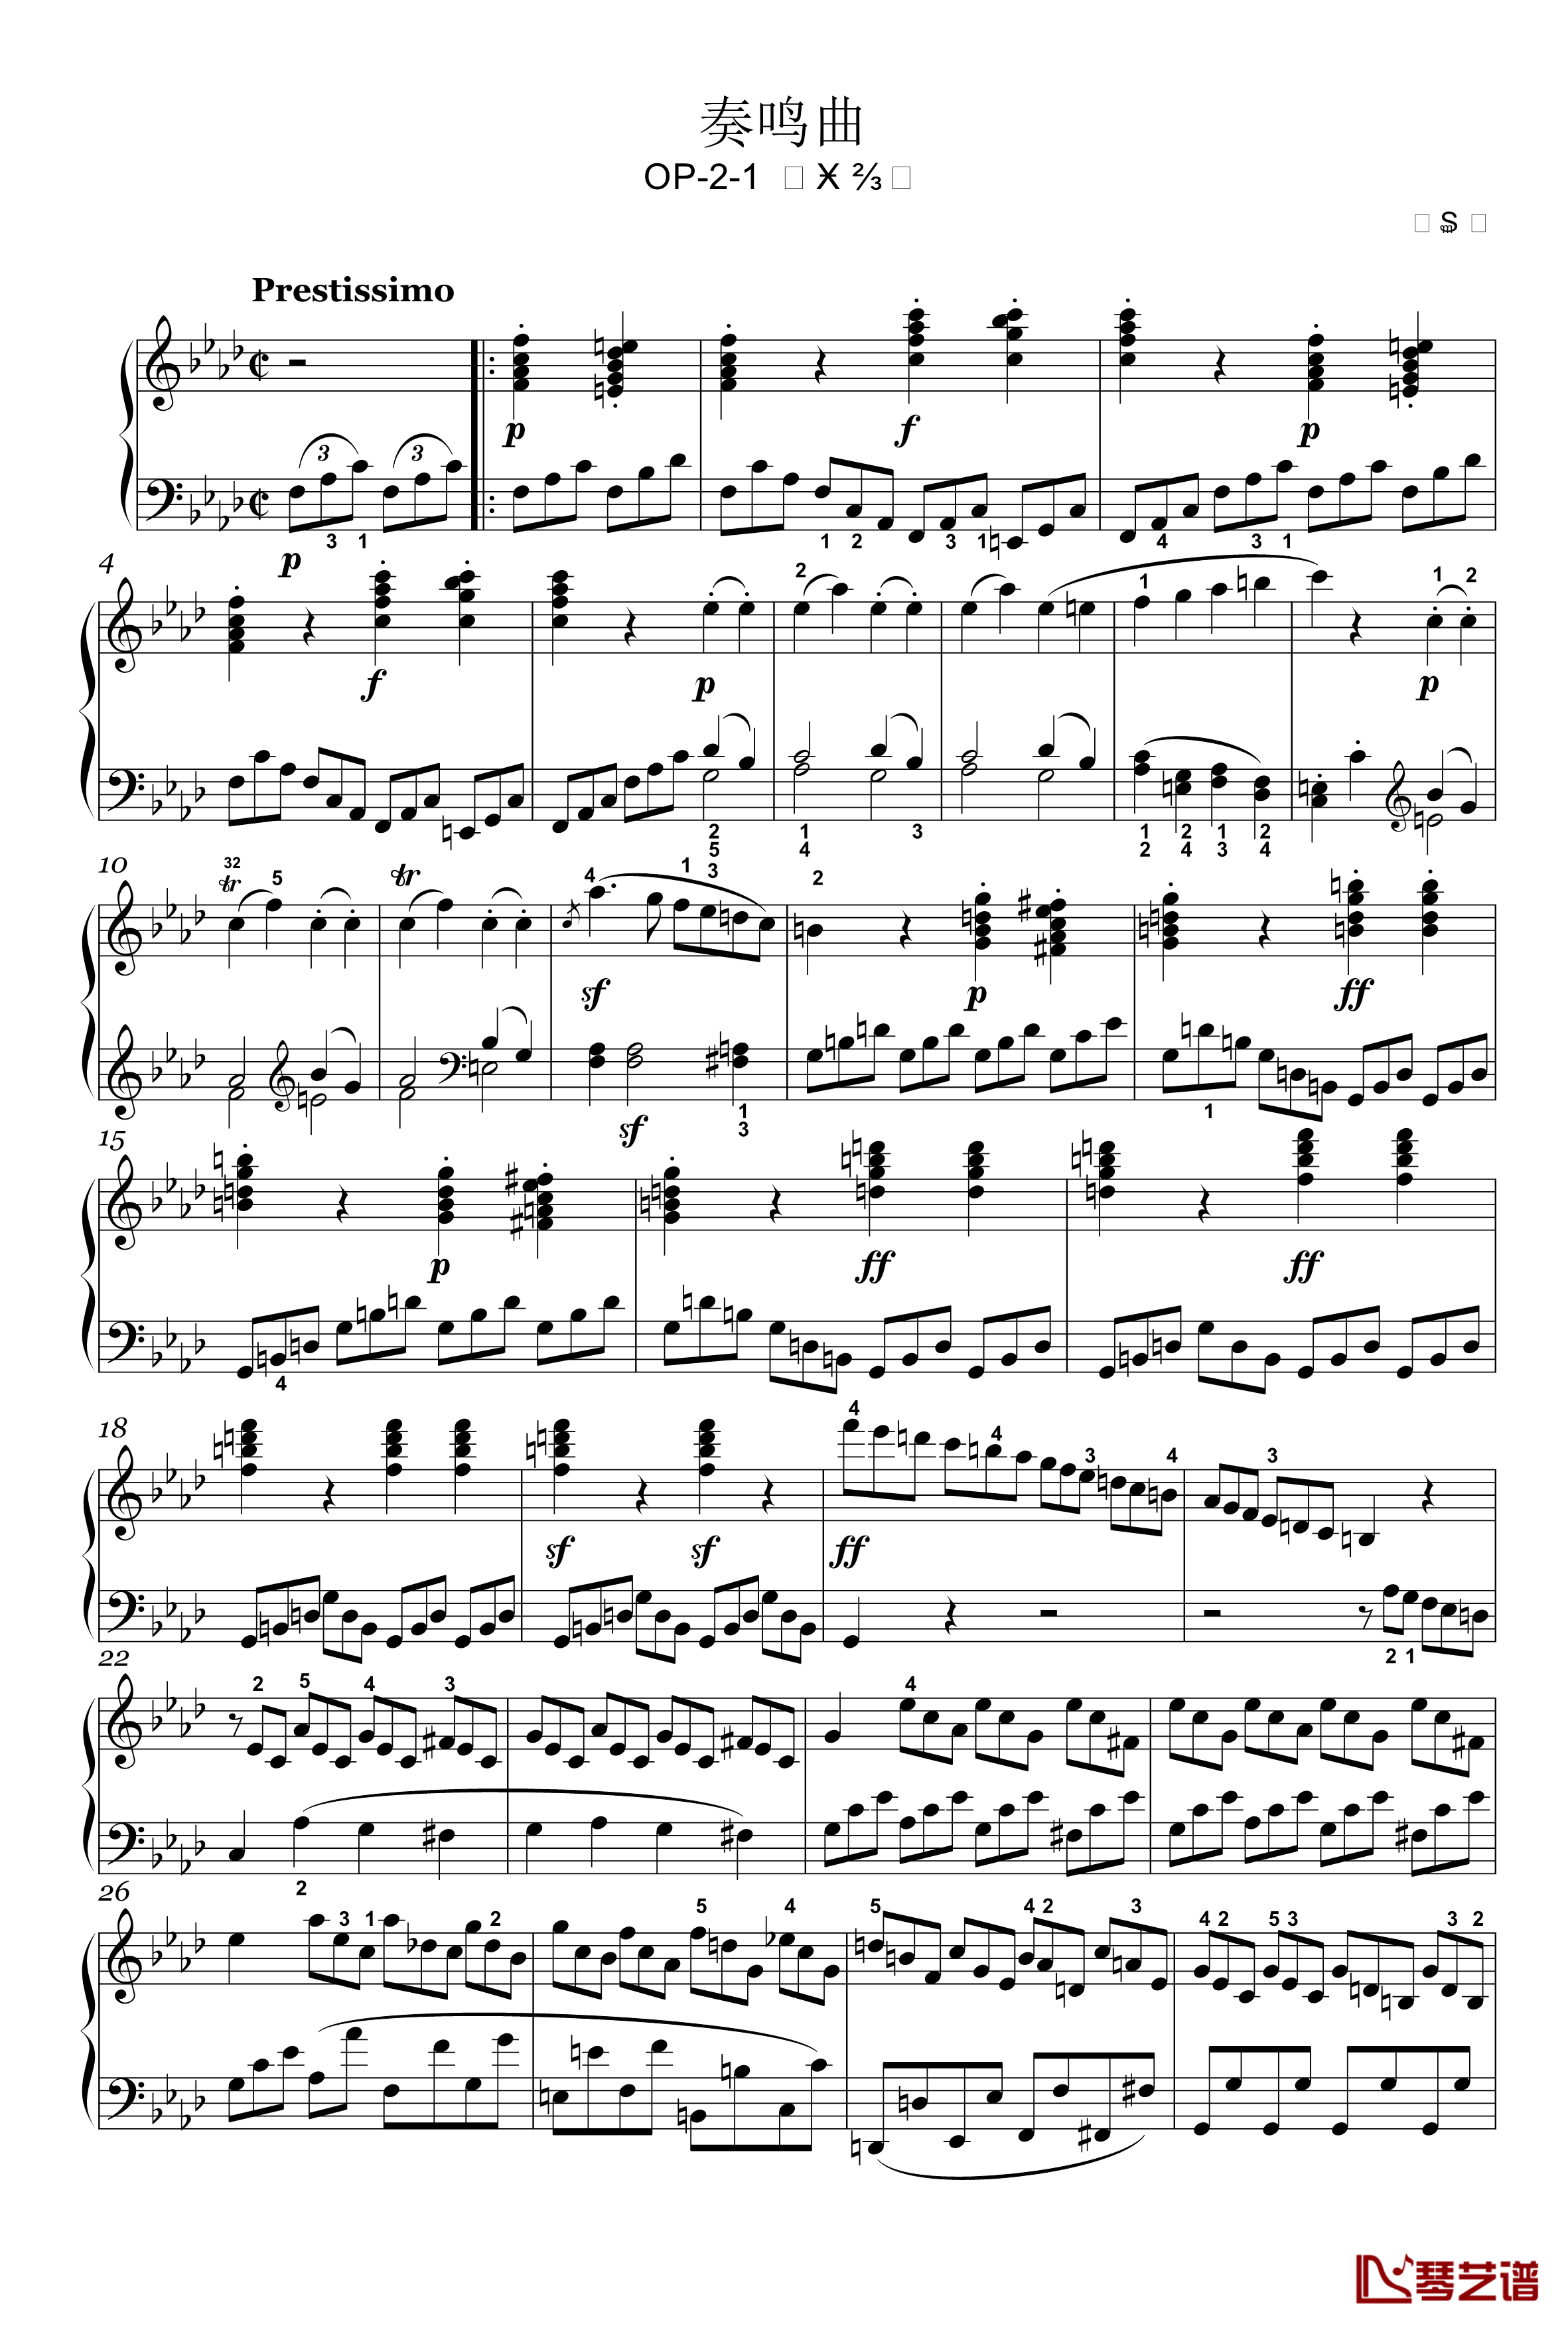 奏鸣曲钢琴谱-op-2-1-第四乐章-贝多芬-beethoven1